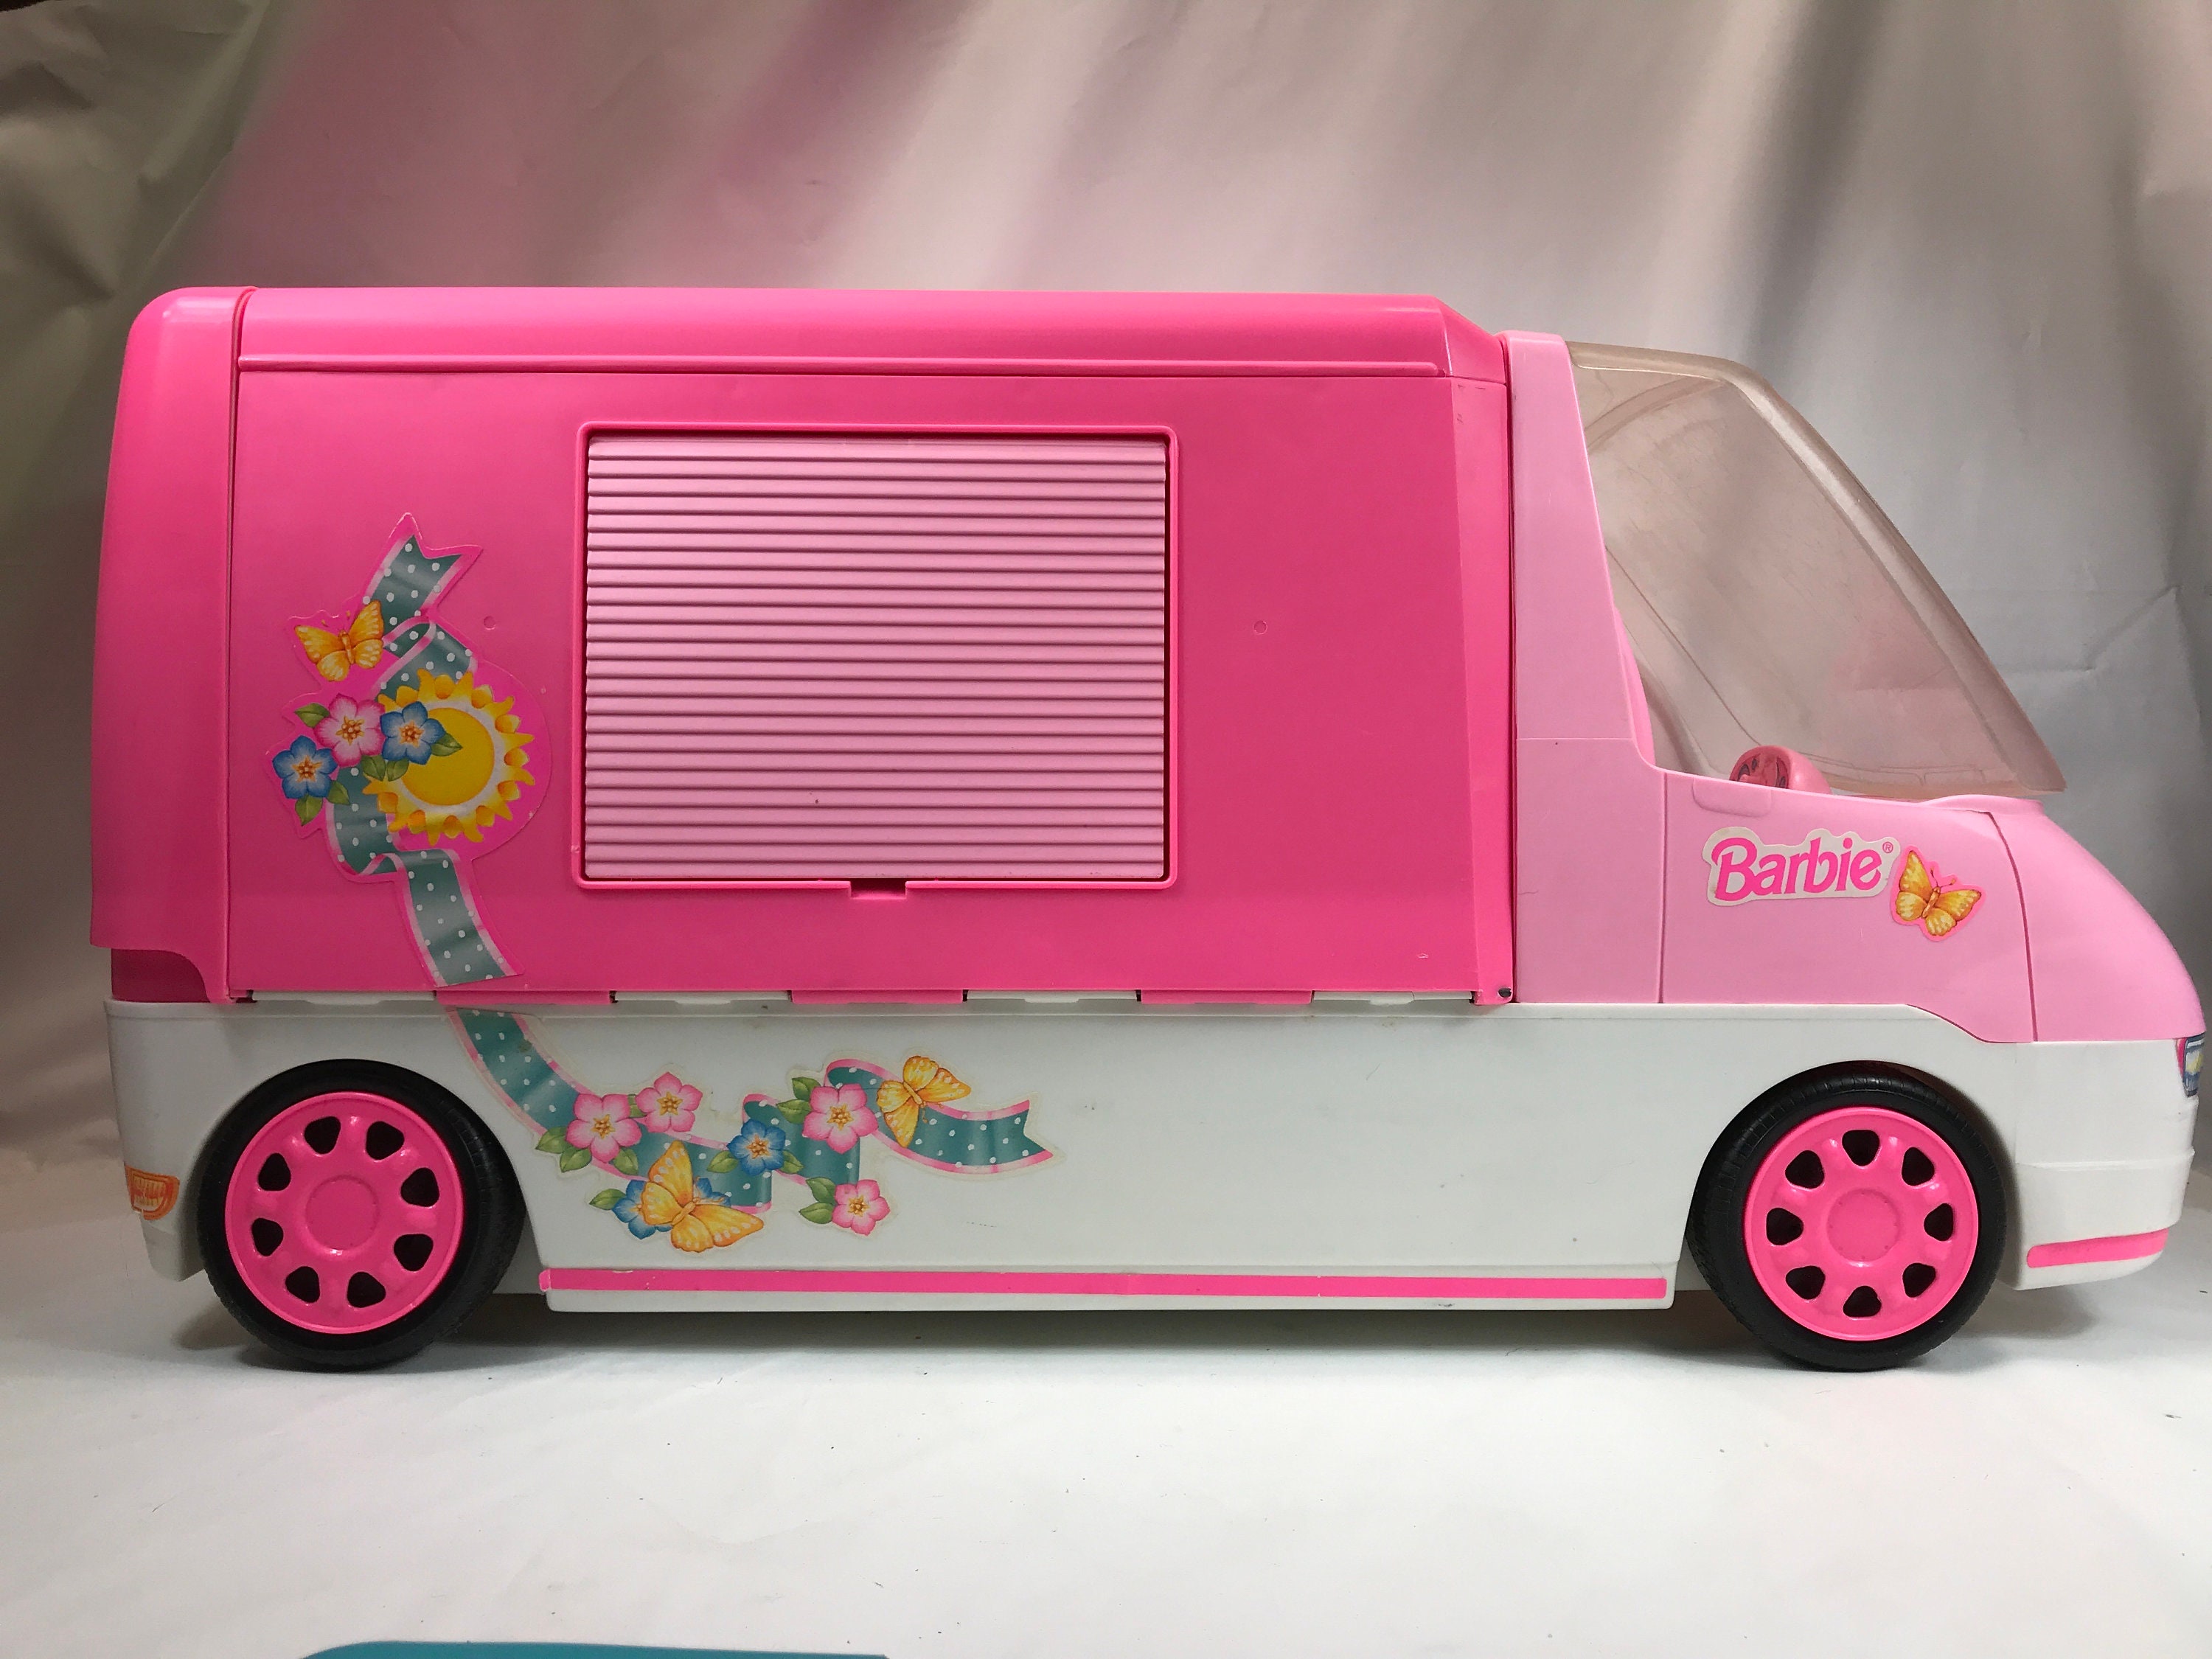 begaan maaien vanavond Barbie 90s Pink Camper RV Vintage Toy - Etsy